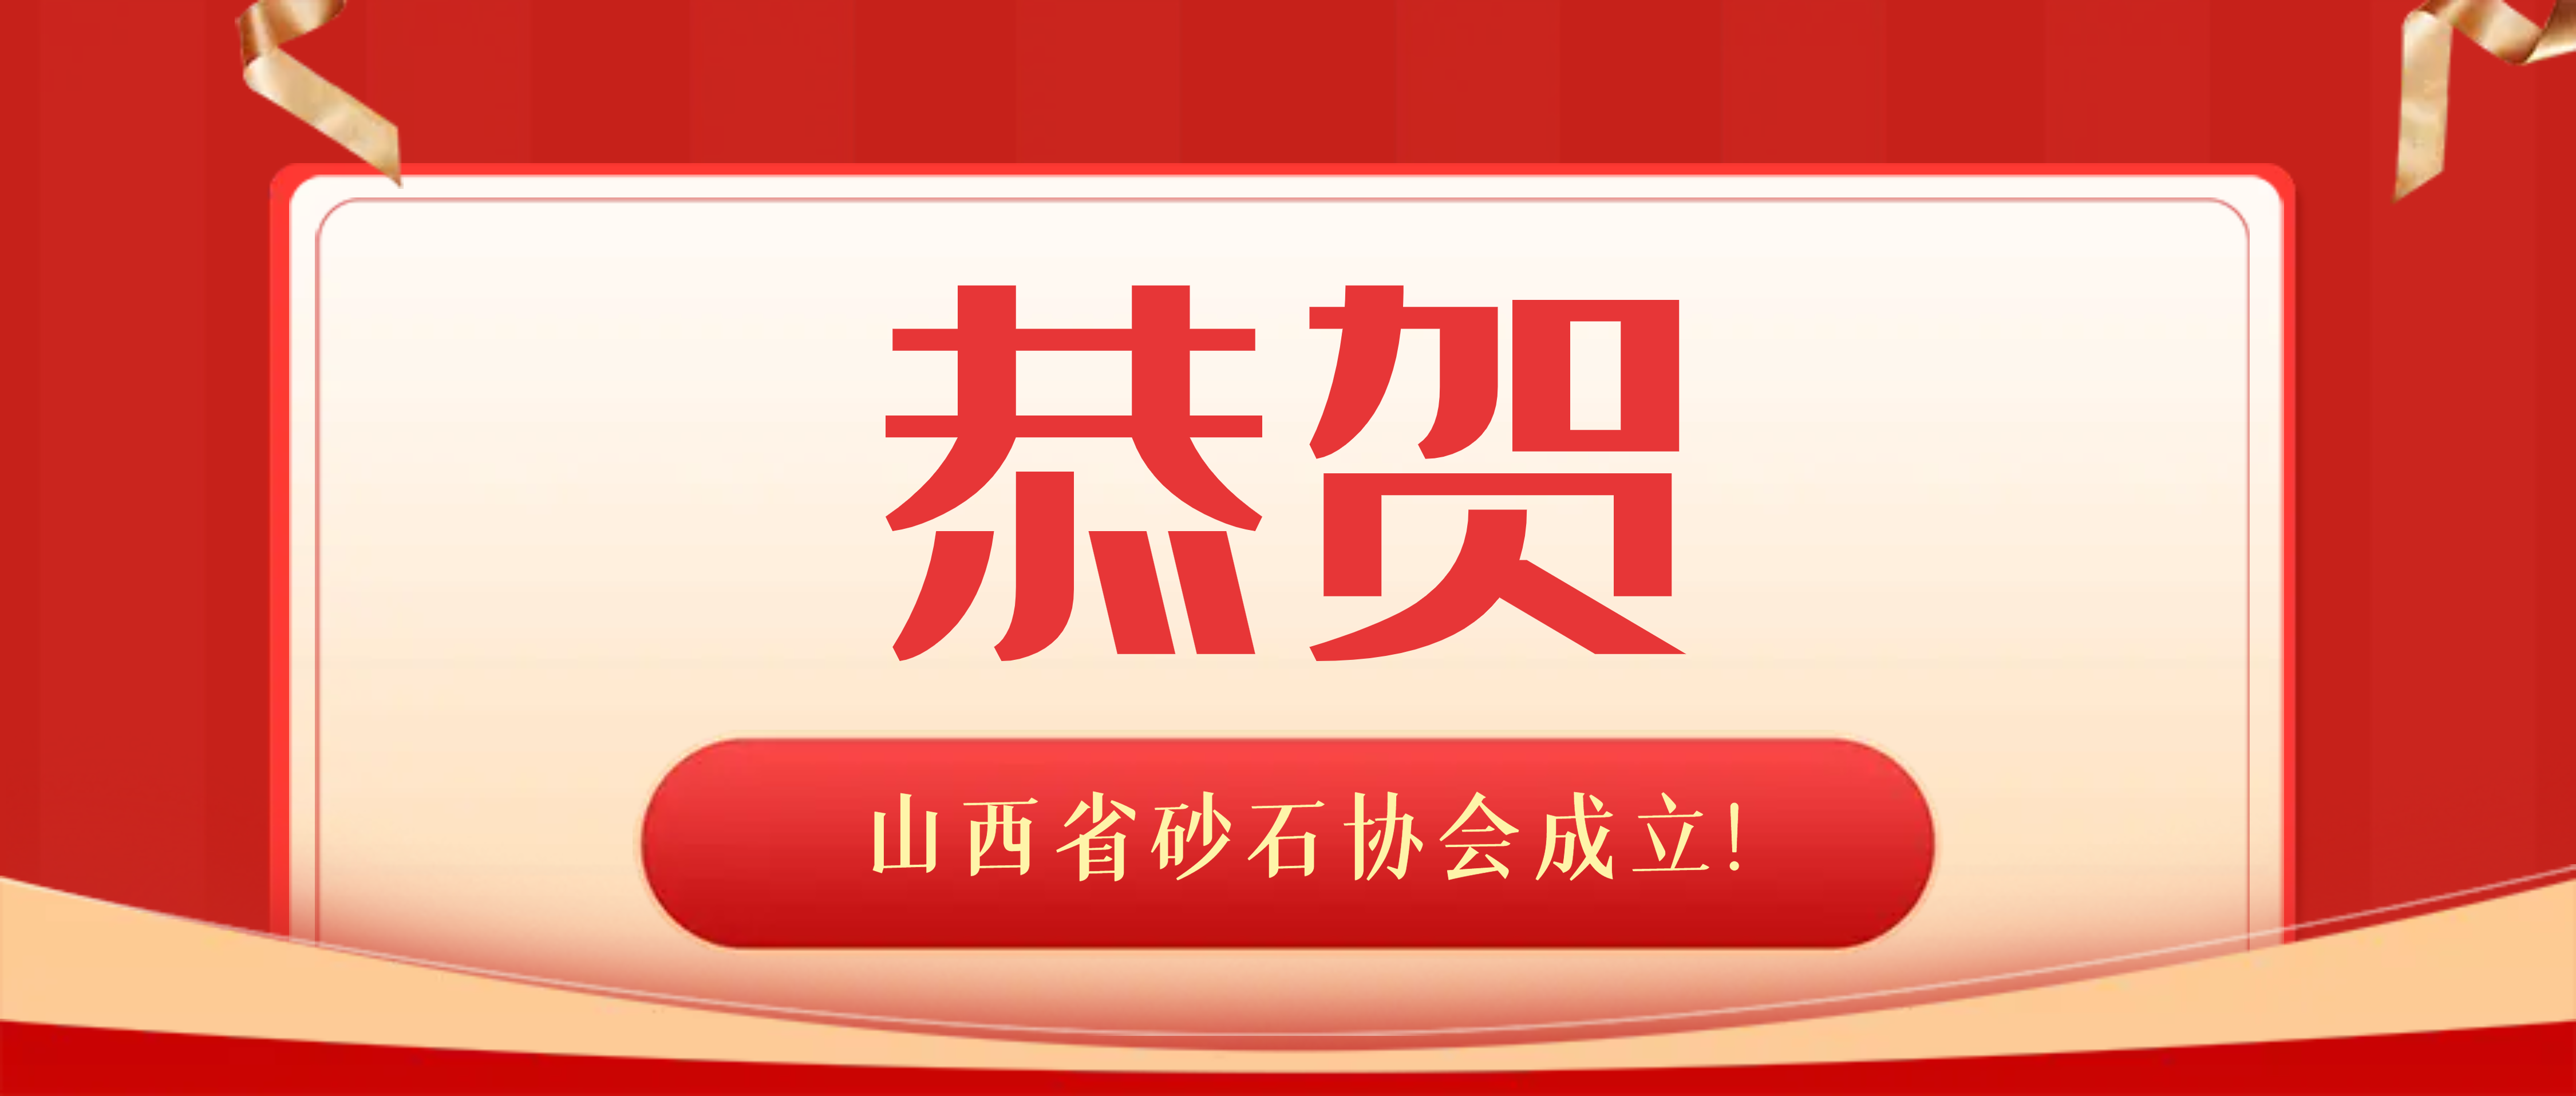 南昌矿机祝贺山西省砂石协会成立！